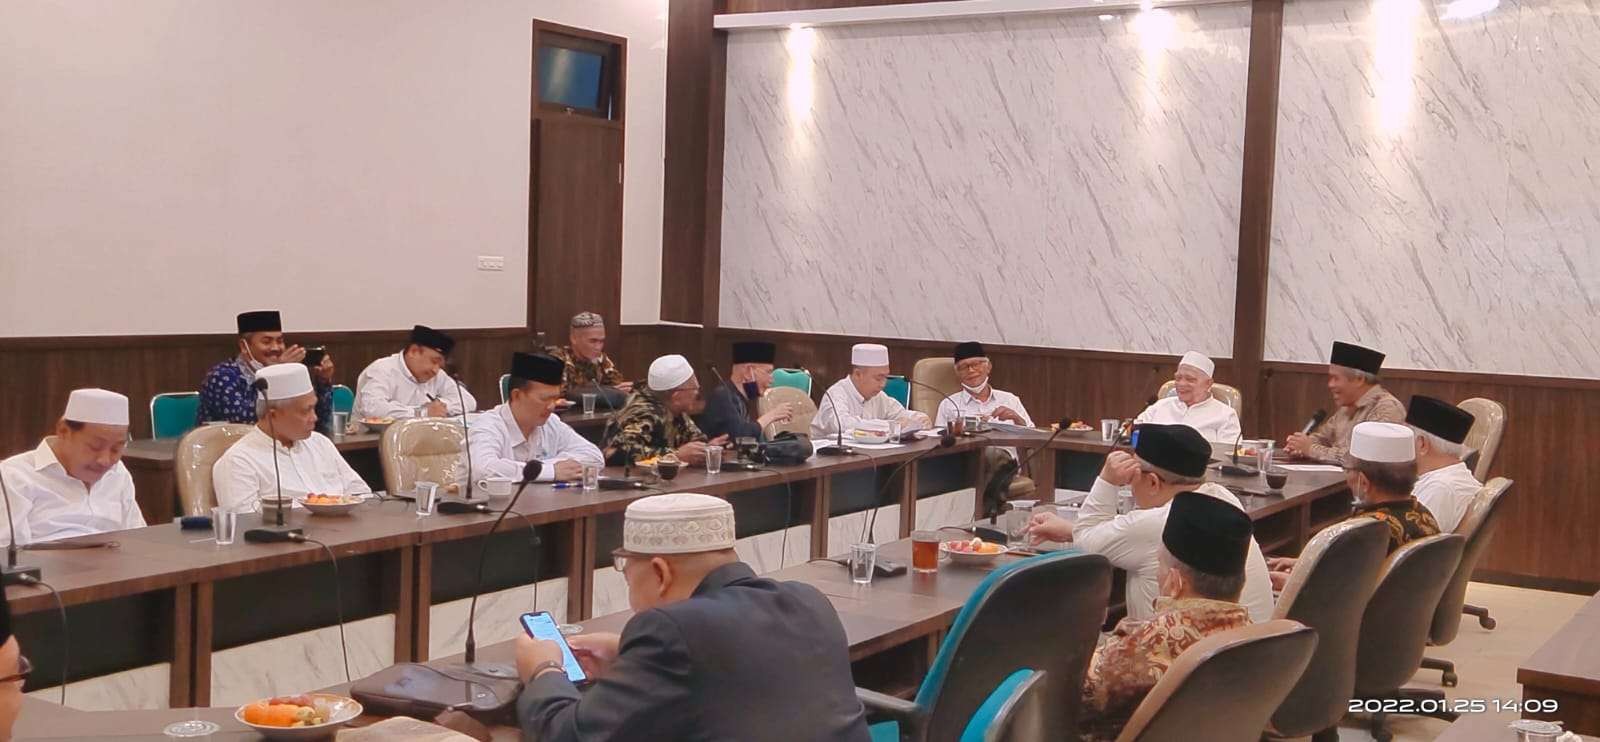 Rapat gabungan syuriah dan tanfidziah PWNU Jatim di Surabaya. Menyusun kepengurusan baru. (Foto: Istimewa)